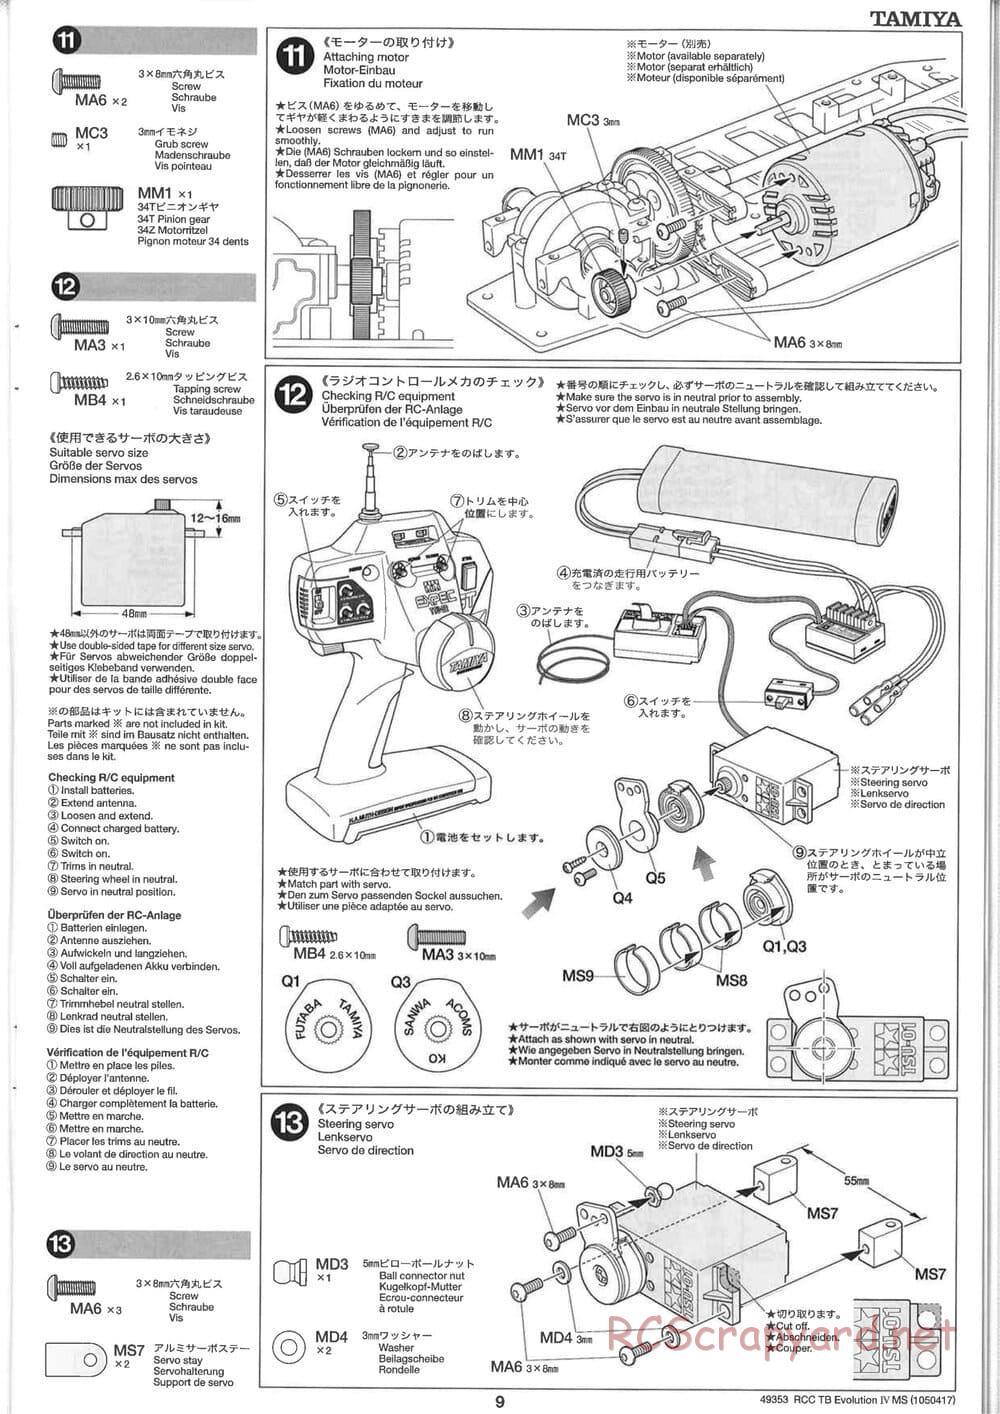 Tamiya - TB Evolution IV MS Chassis - Manual - Page 9